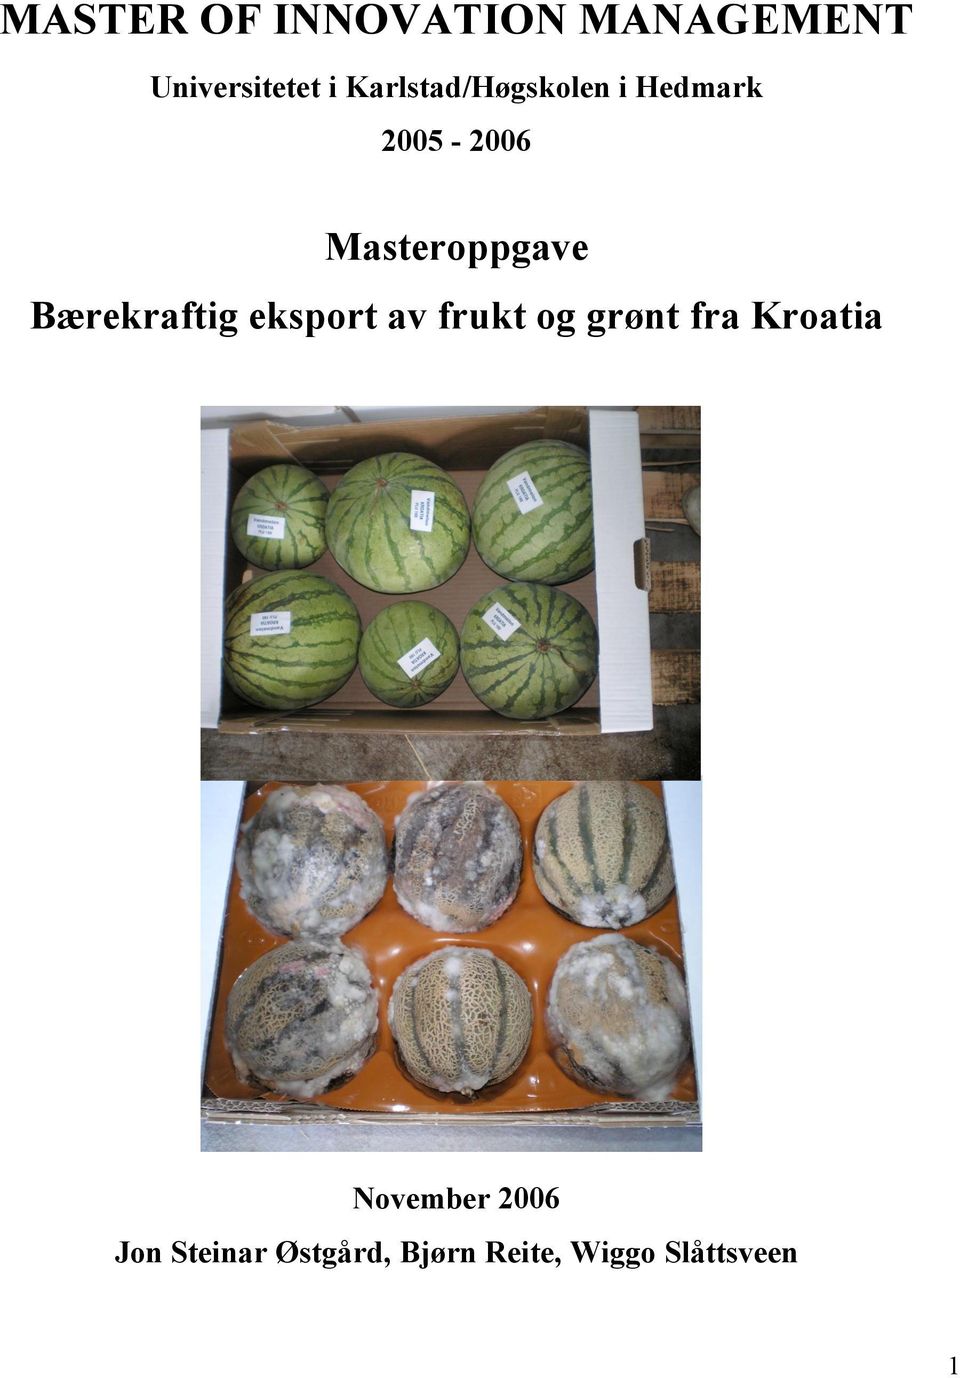 Bærekraftig eksport av frukt og grønt fra Kroatia